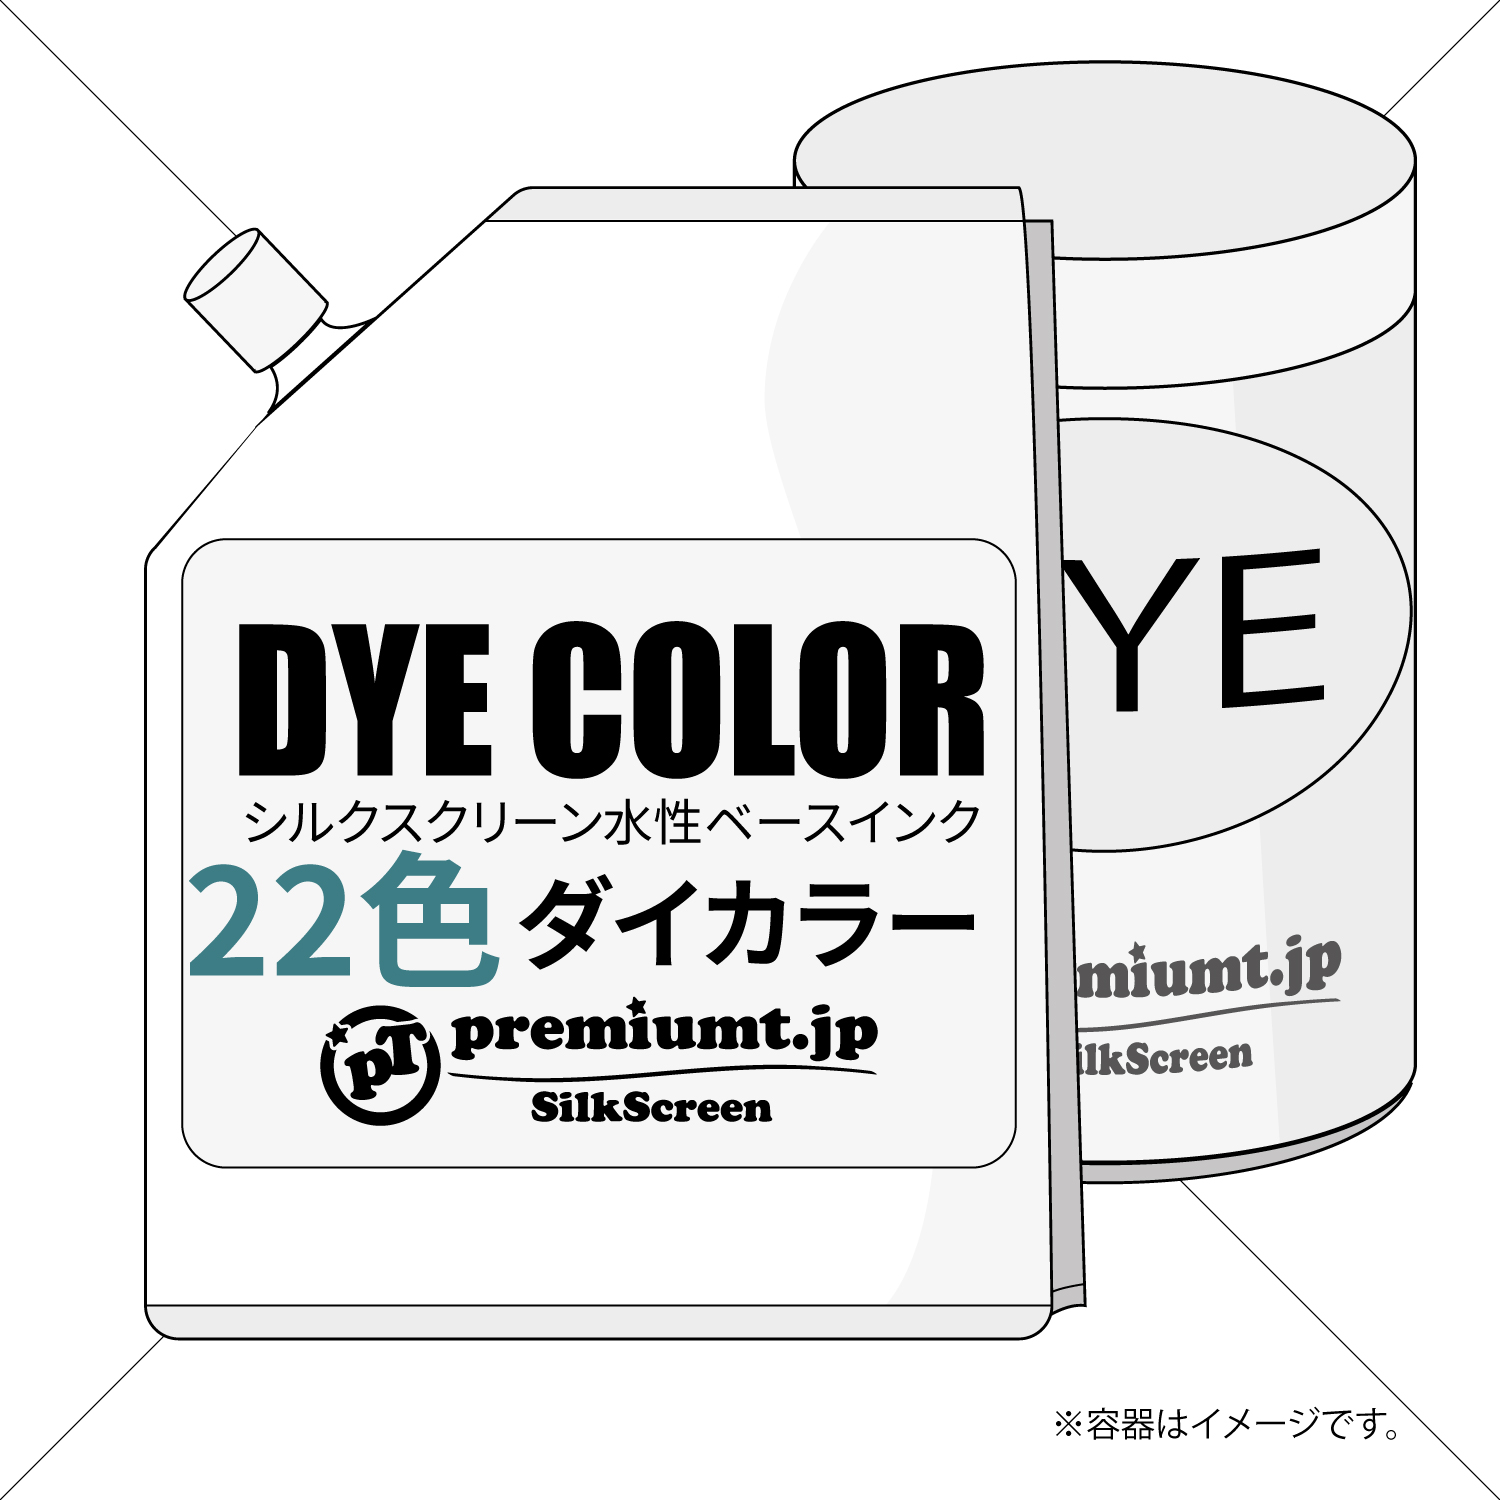 ダイ(DYE)カラー・水性ベース染み込むインク（100g~1kg）在庫限り シルクスクリーン機材通販 premiumT